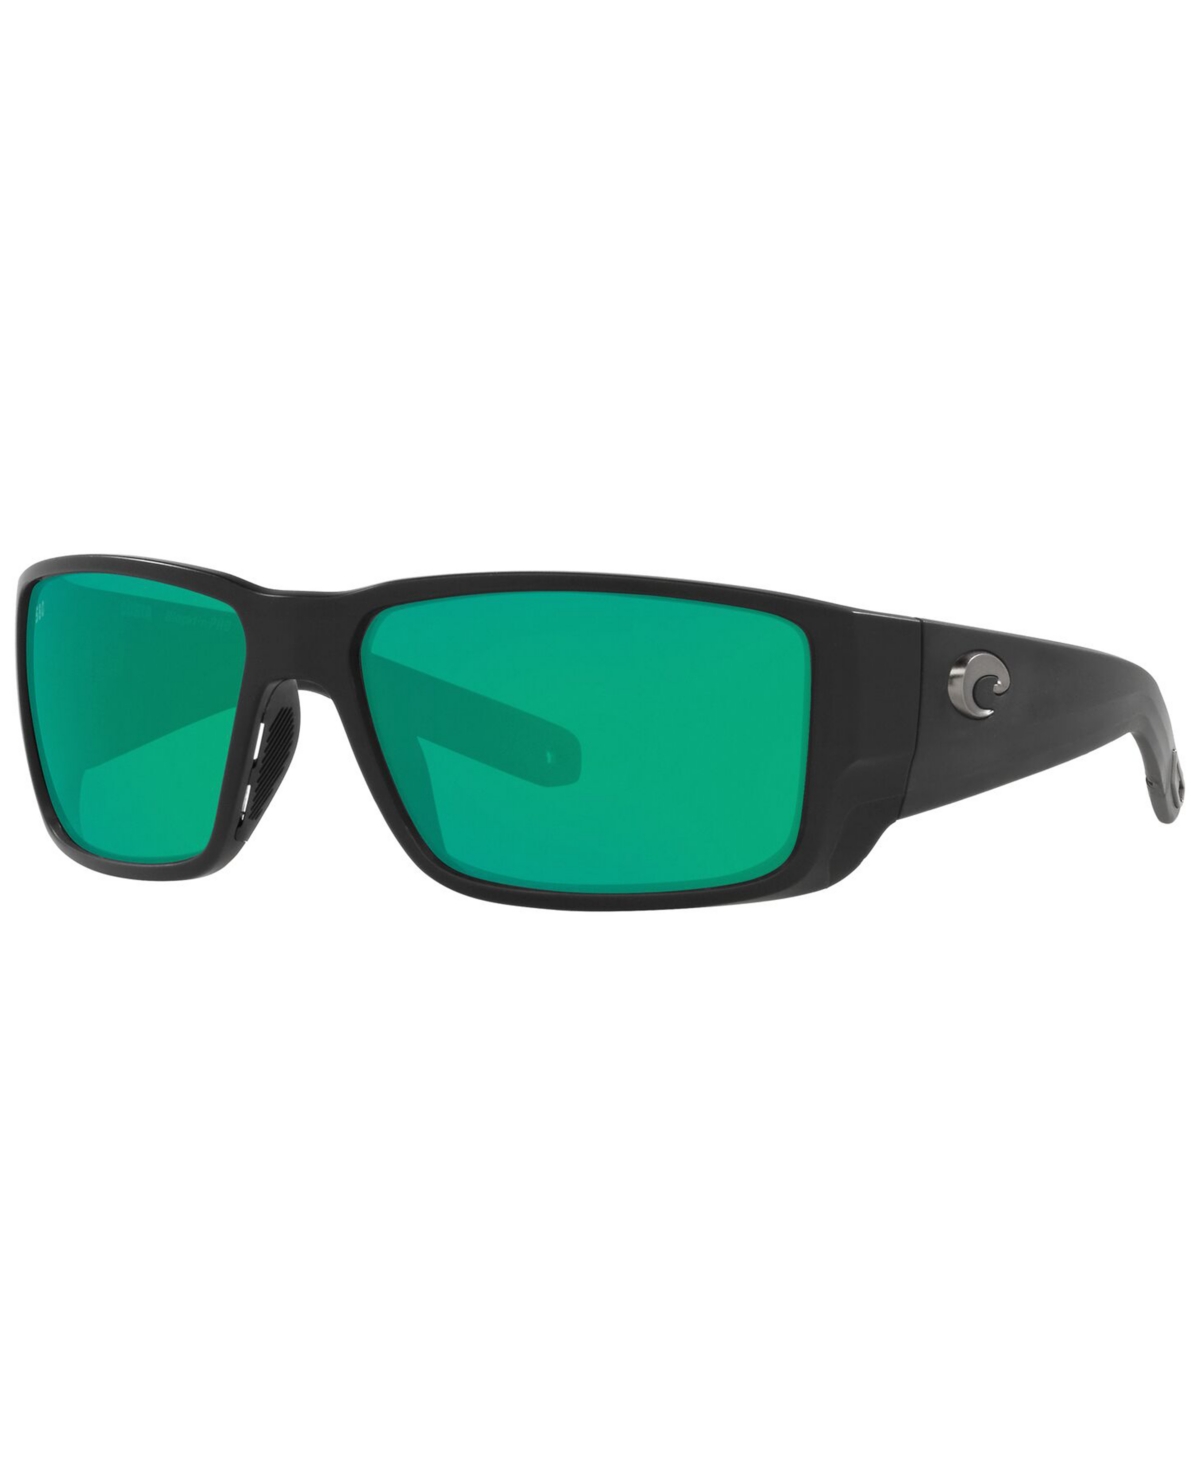 Costa Del Mar Polarized Blackfin Pro Sunglasses, 6s9078 60 In Matte Black,green Mirror G